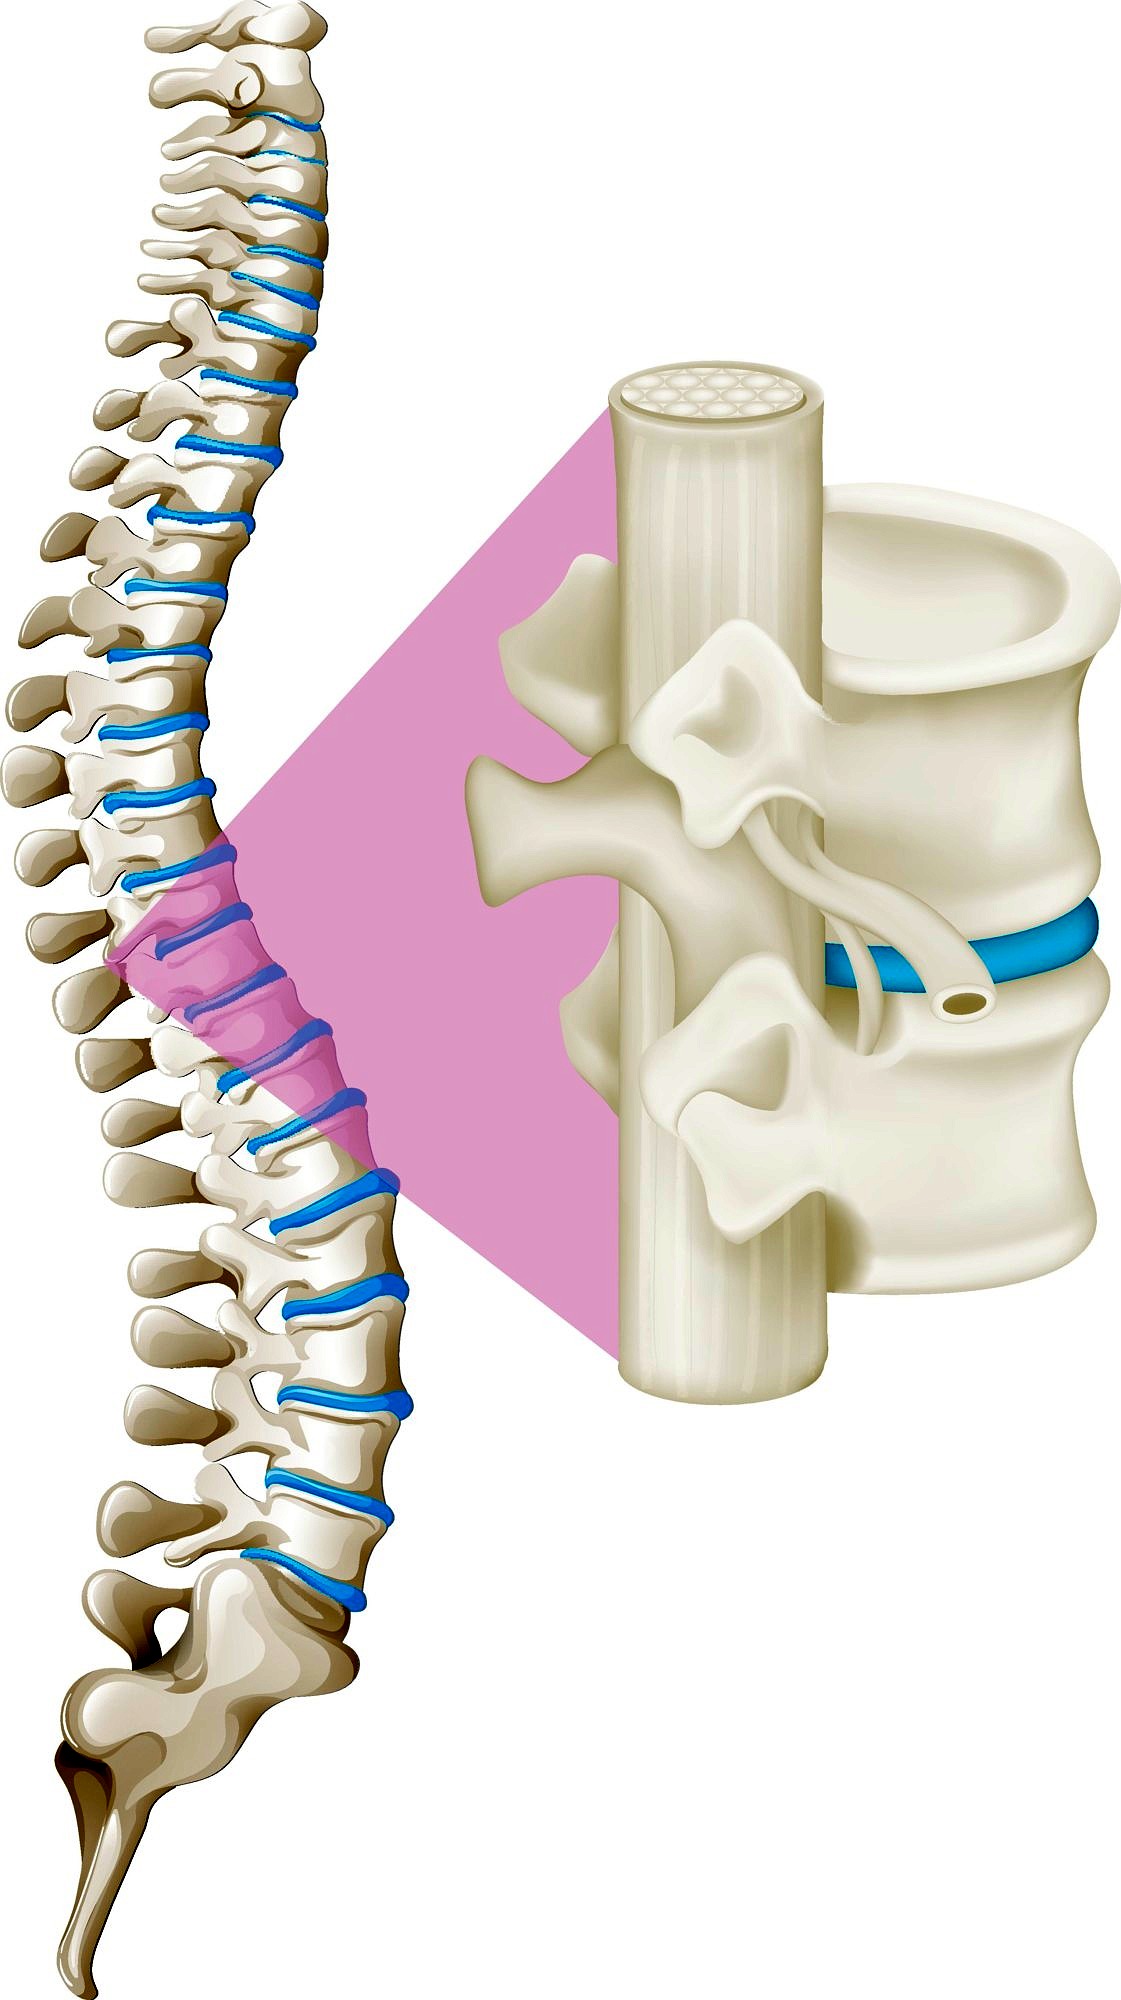 Zur Seite: Ursachen von Rückenschmerz